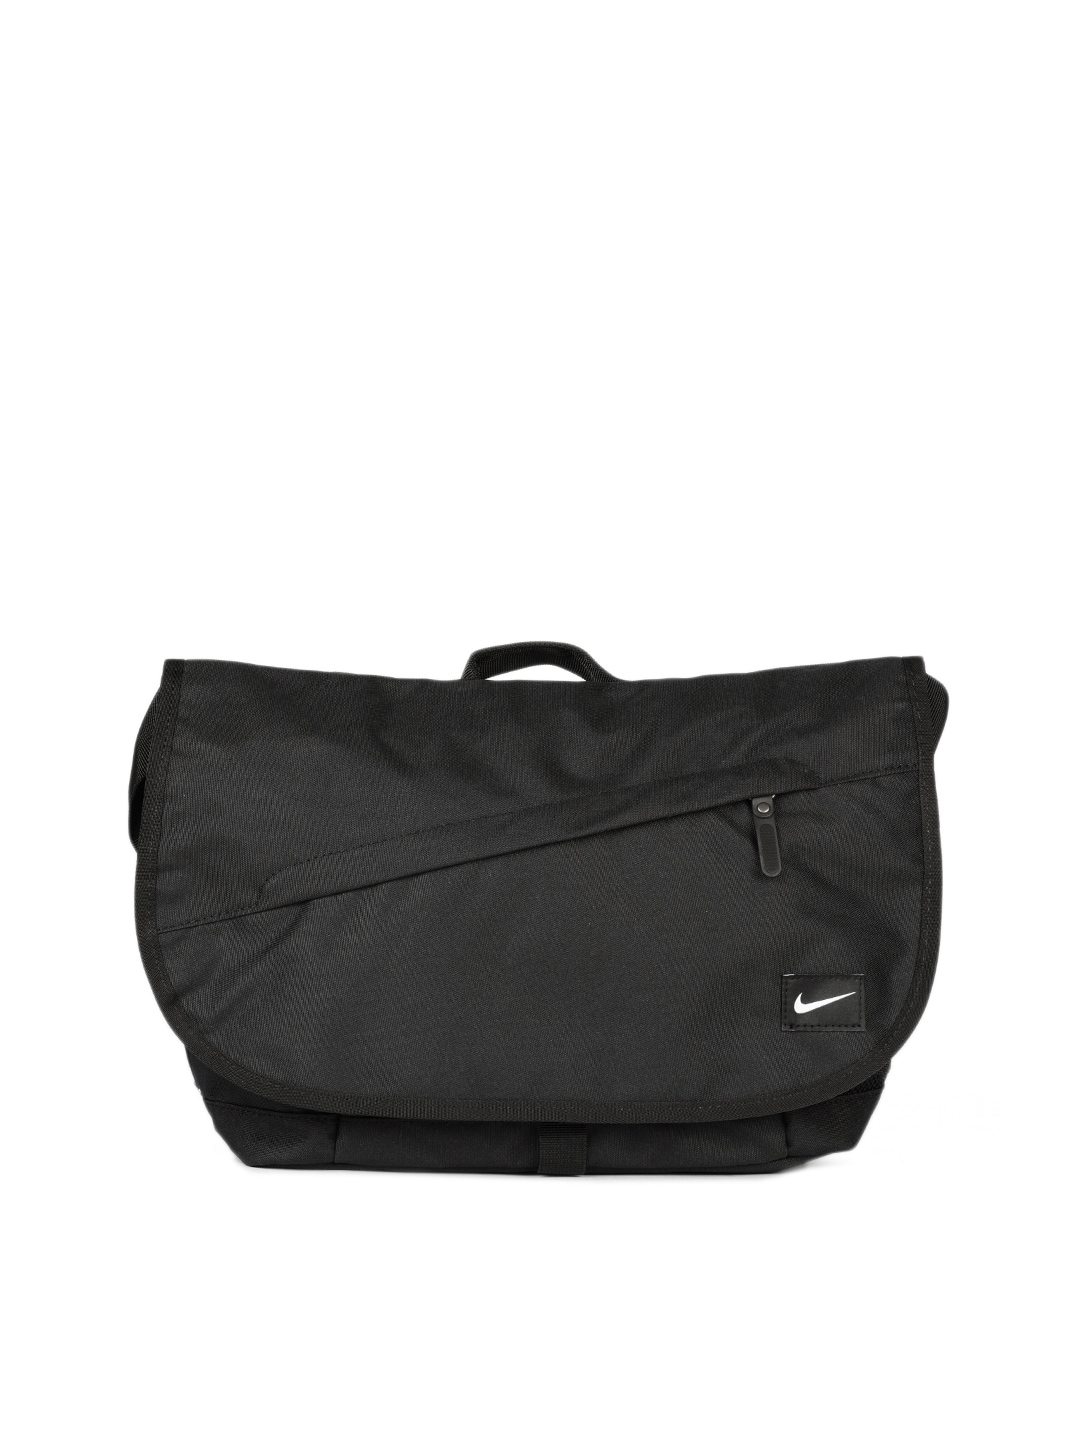 Nike Unisex Black Messenger Bag